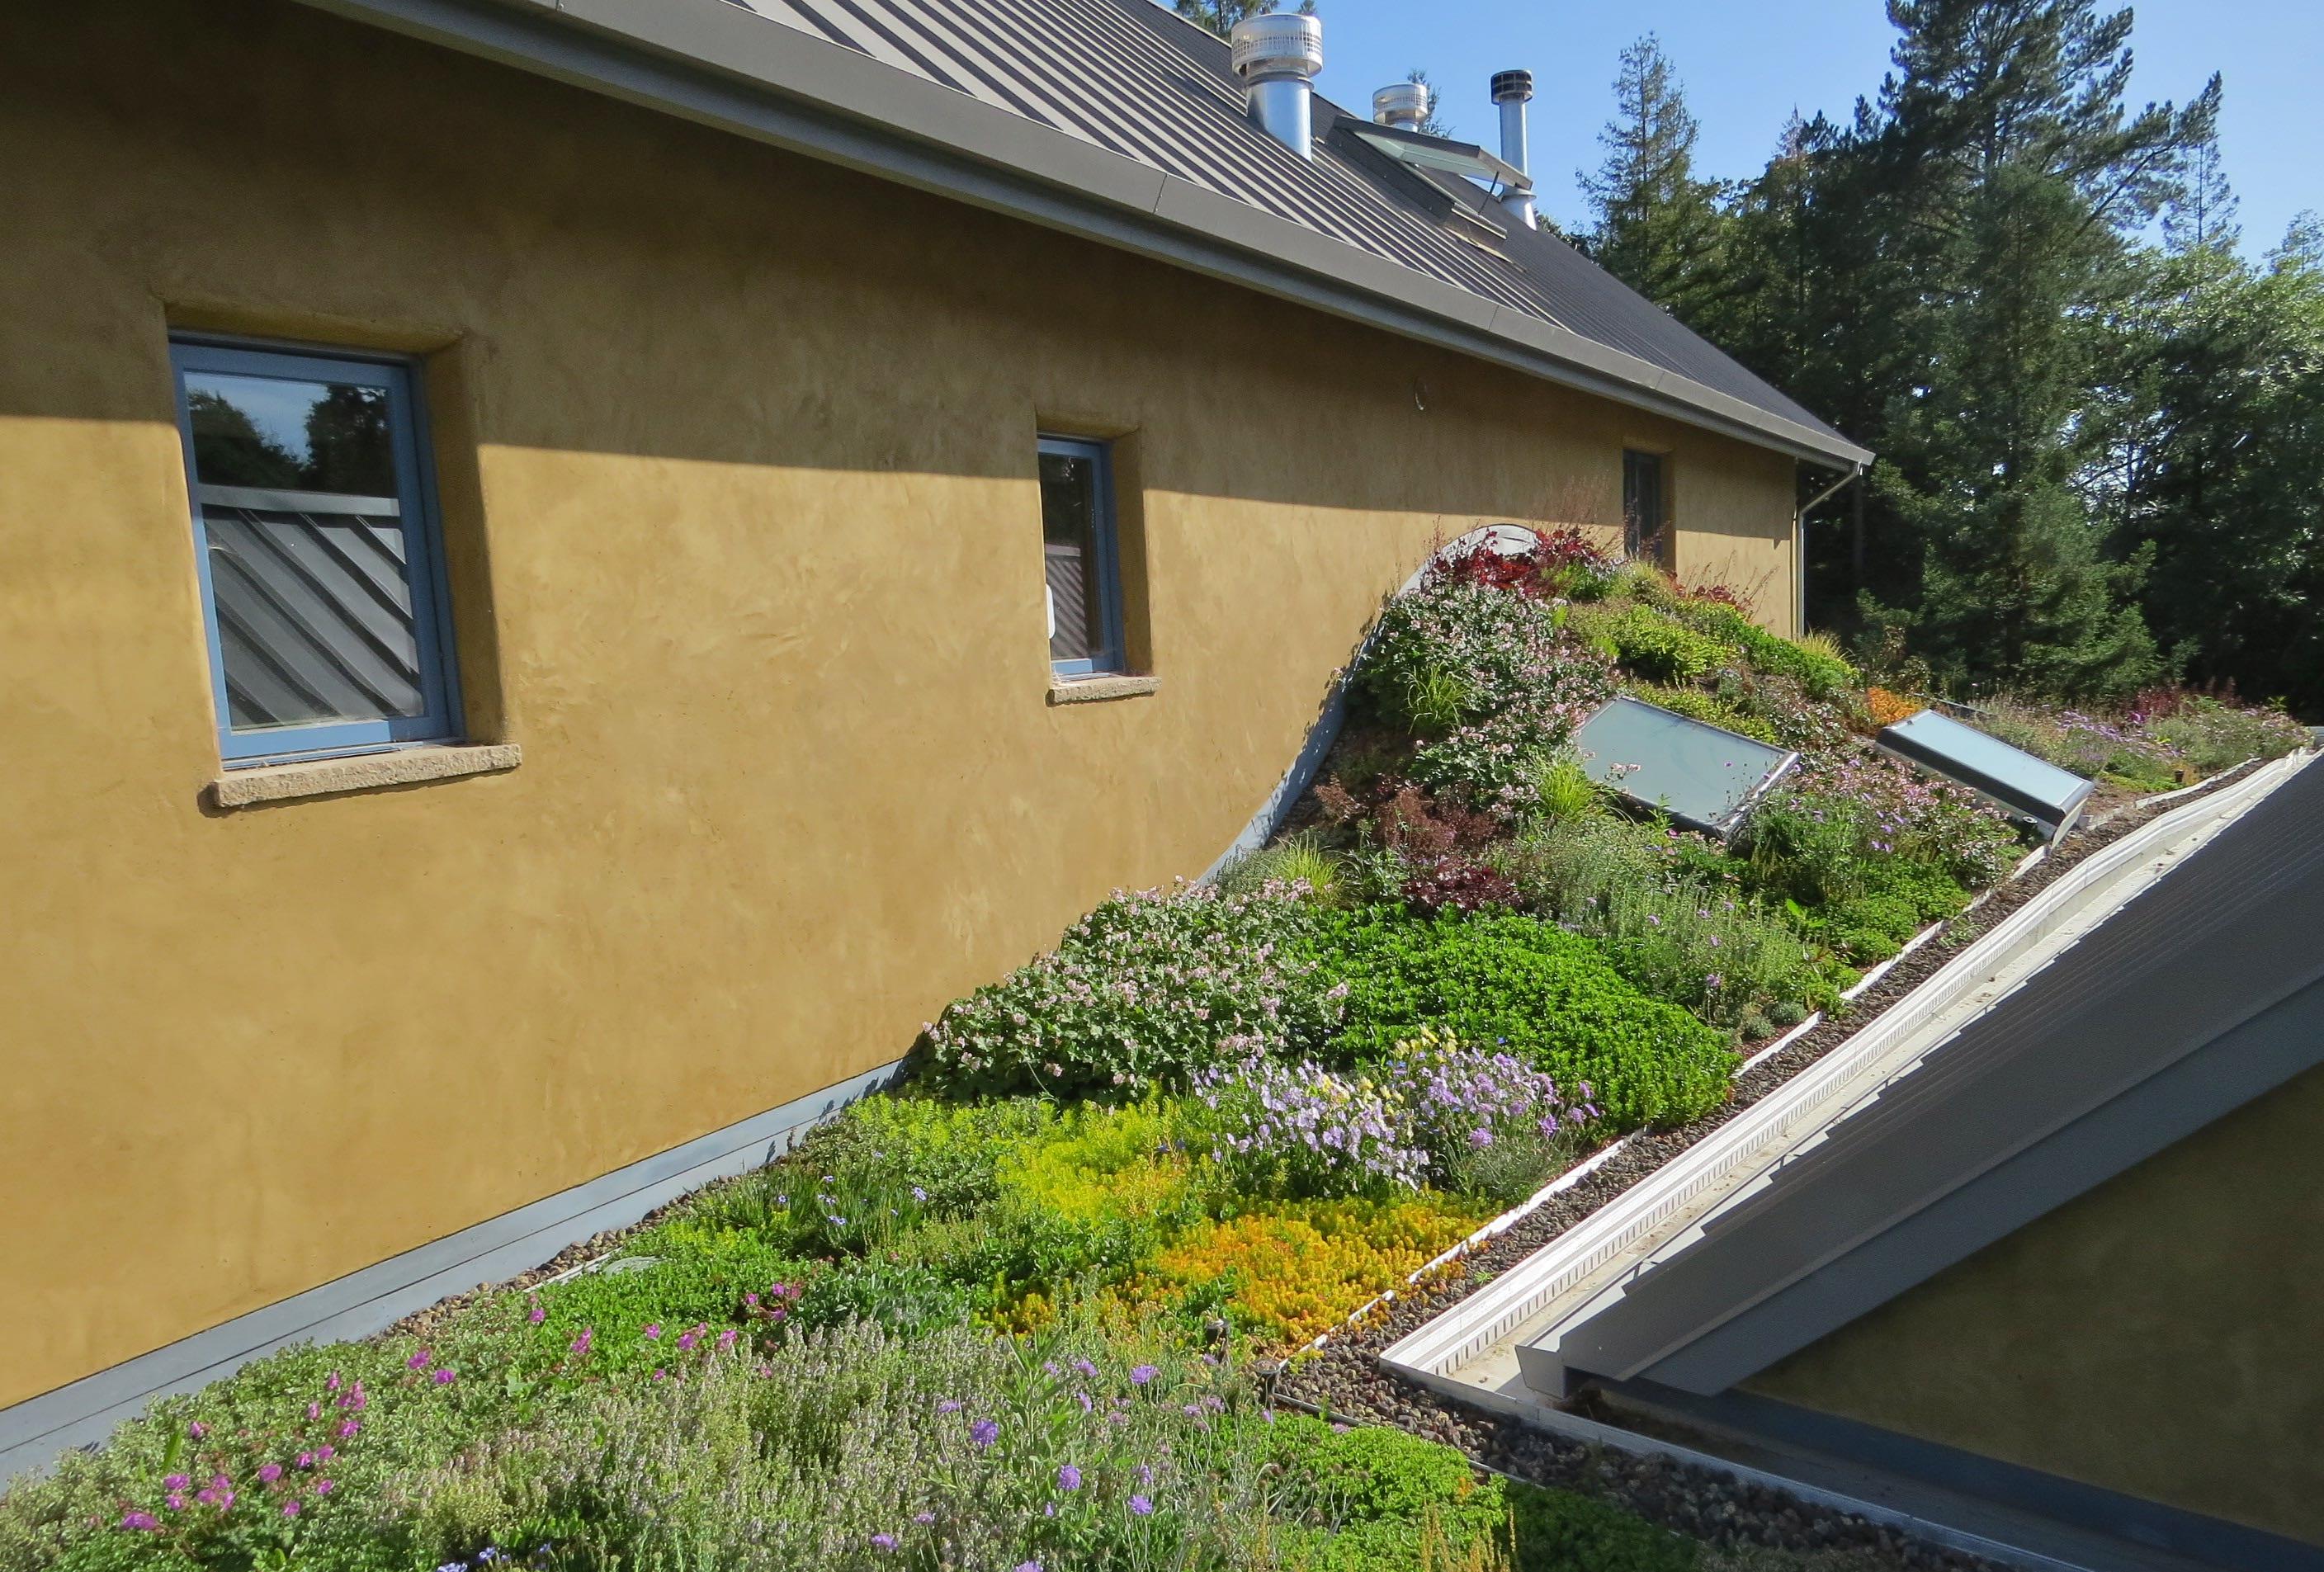 Vegetative roofs keep buildings cool 